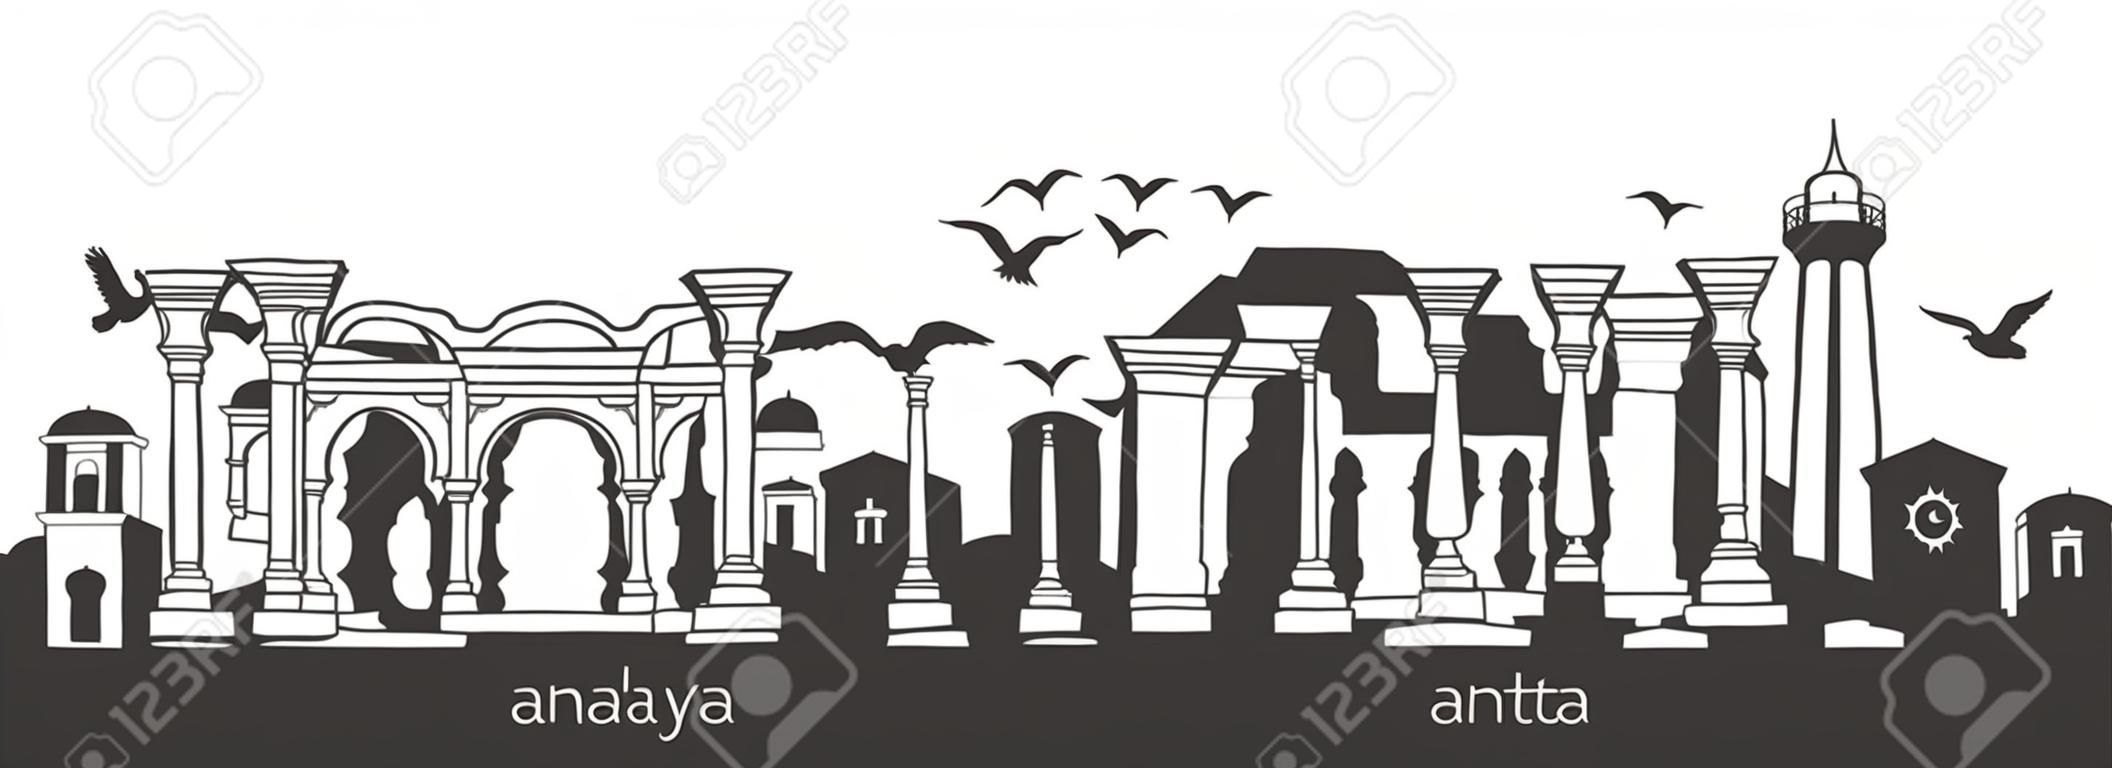 Antalya, Turquia com mão desenhada doodle símbolos turcos. Cena panorâmica horizontal para banner ou design de impressão. Estilo minimalista plano com elementos pretos.